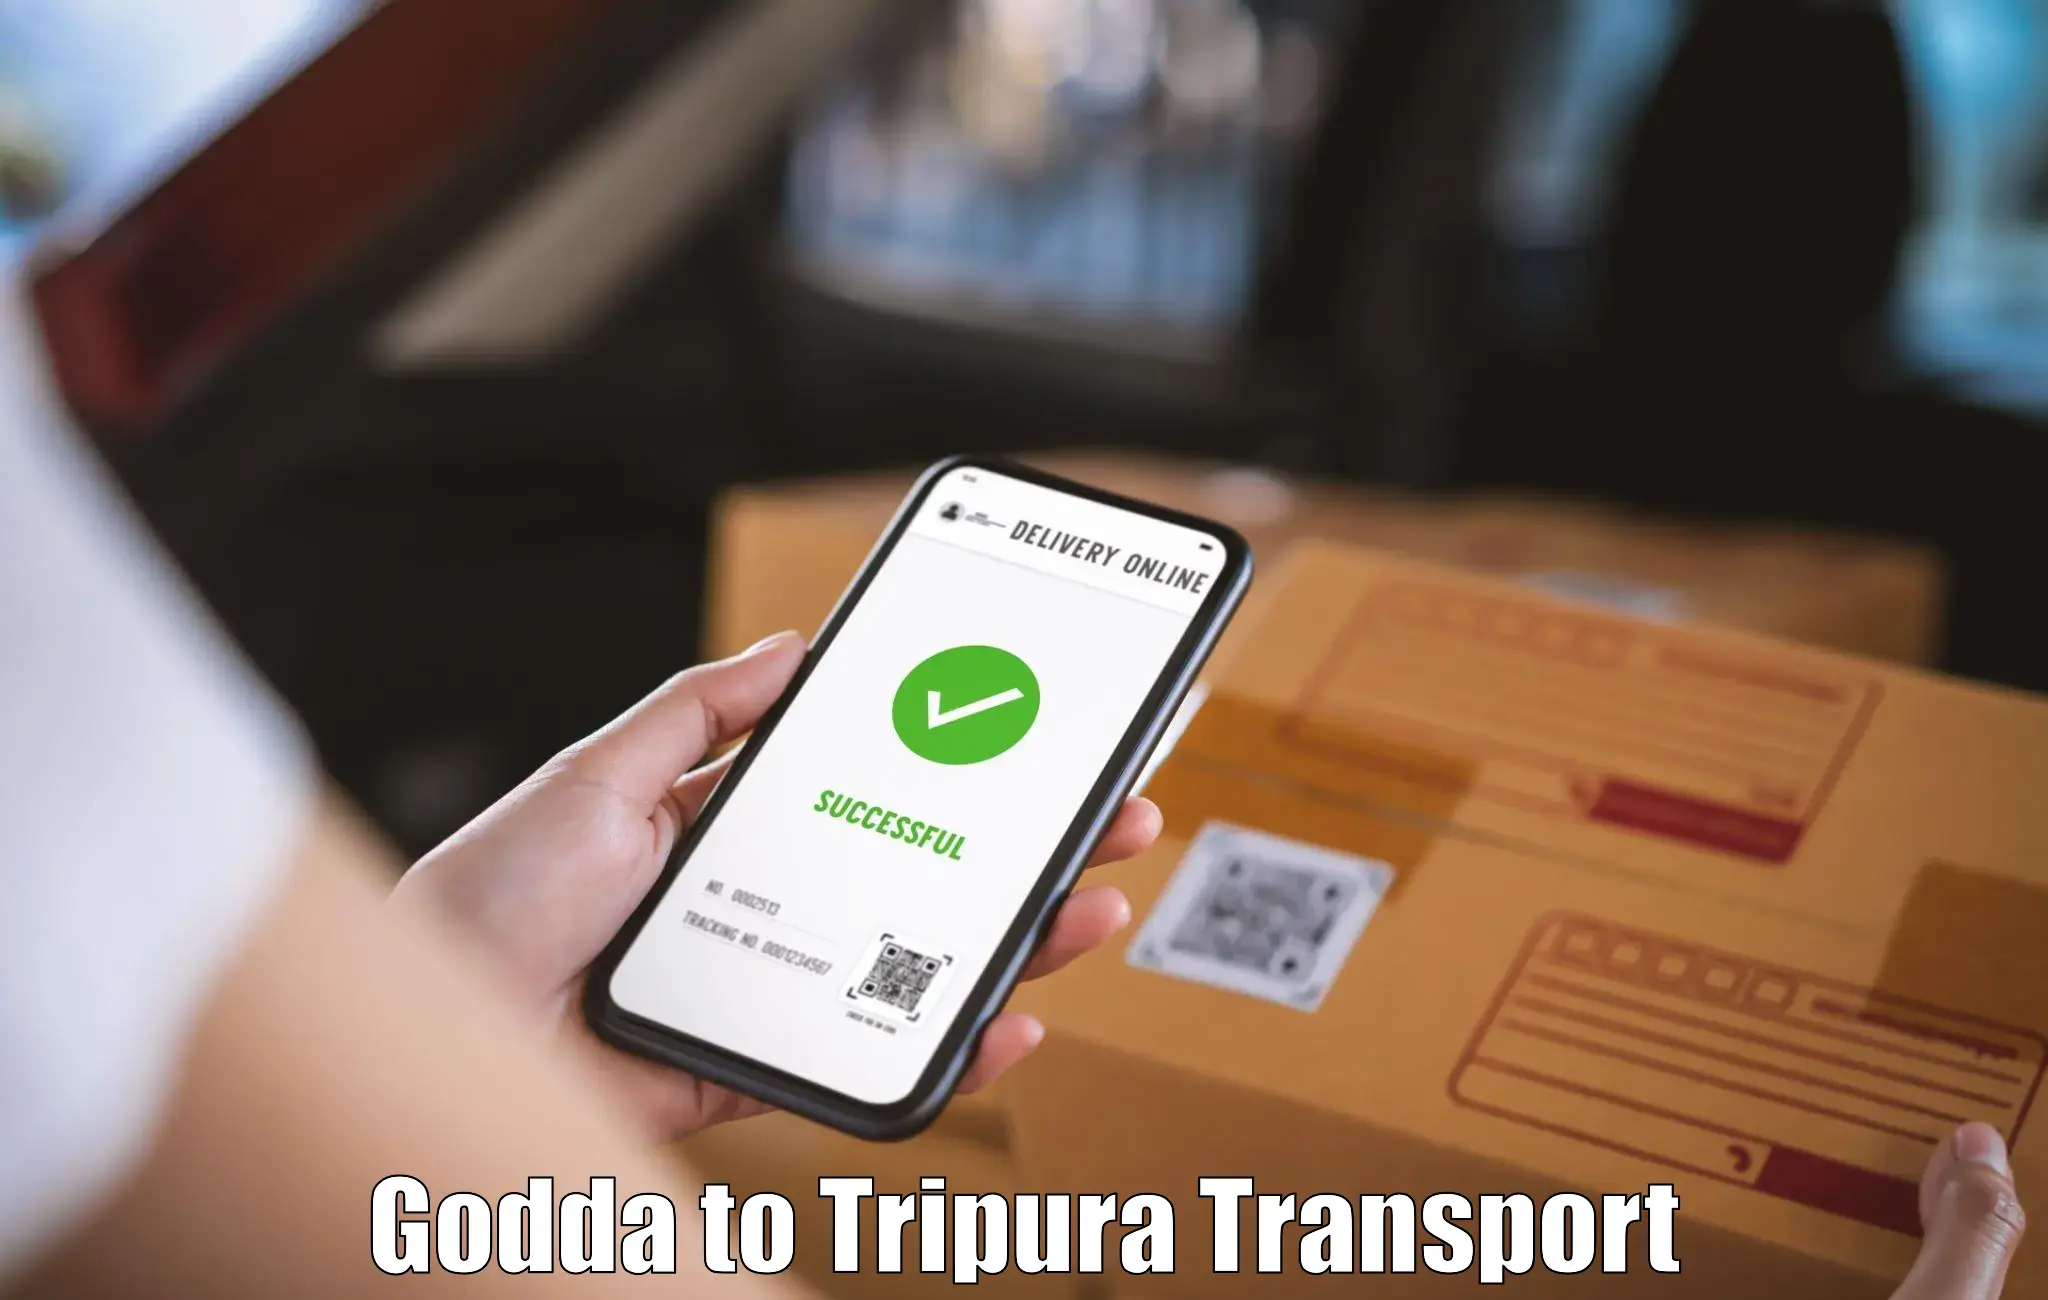 Daily parcel service transport Godda to Sonamura